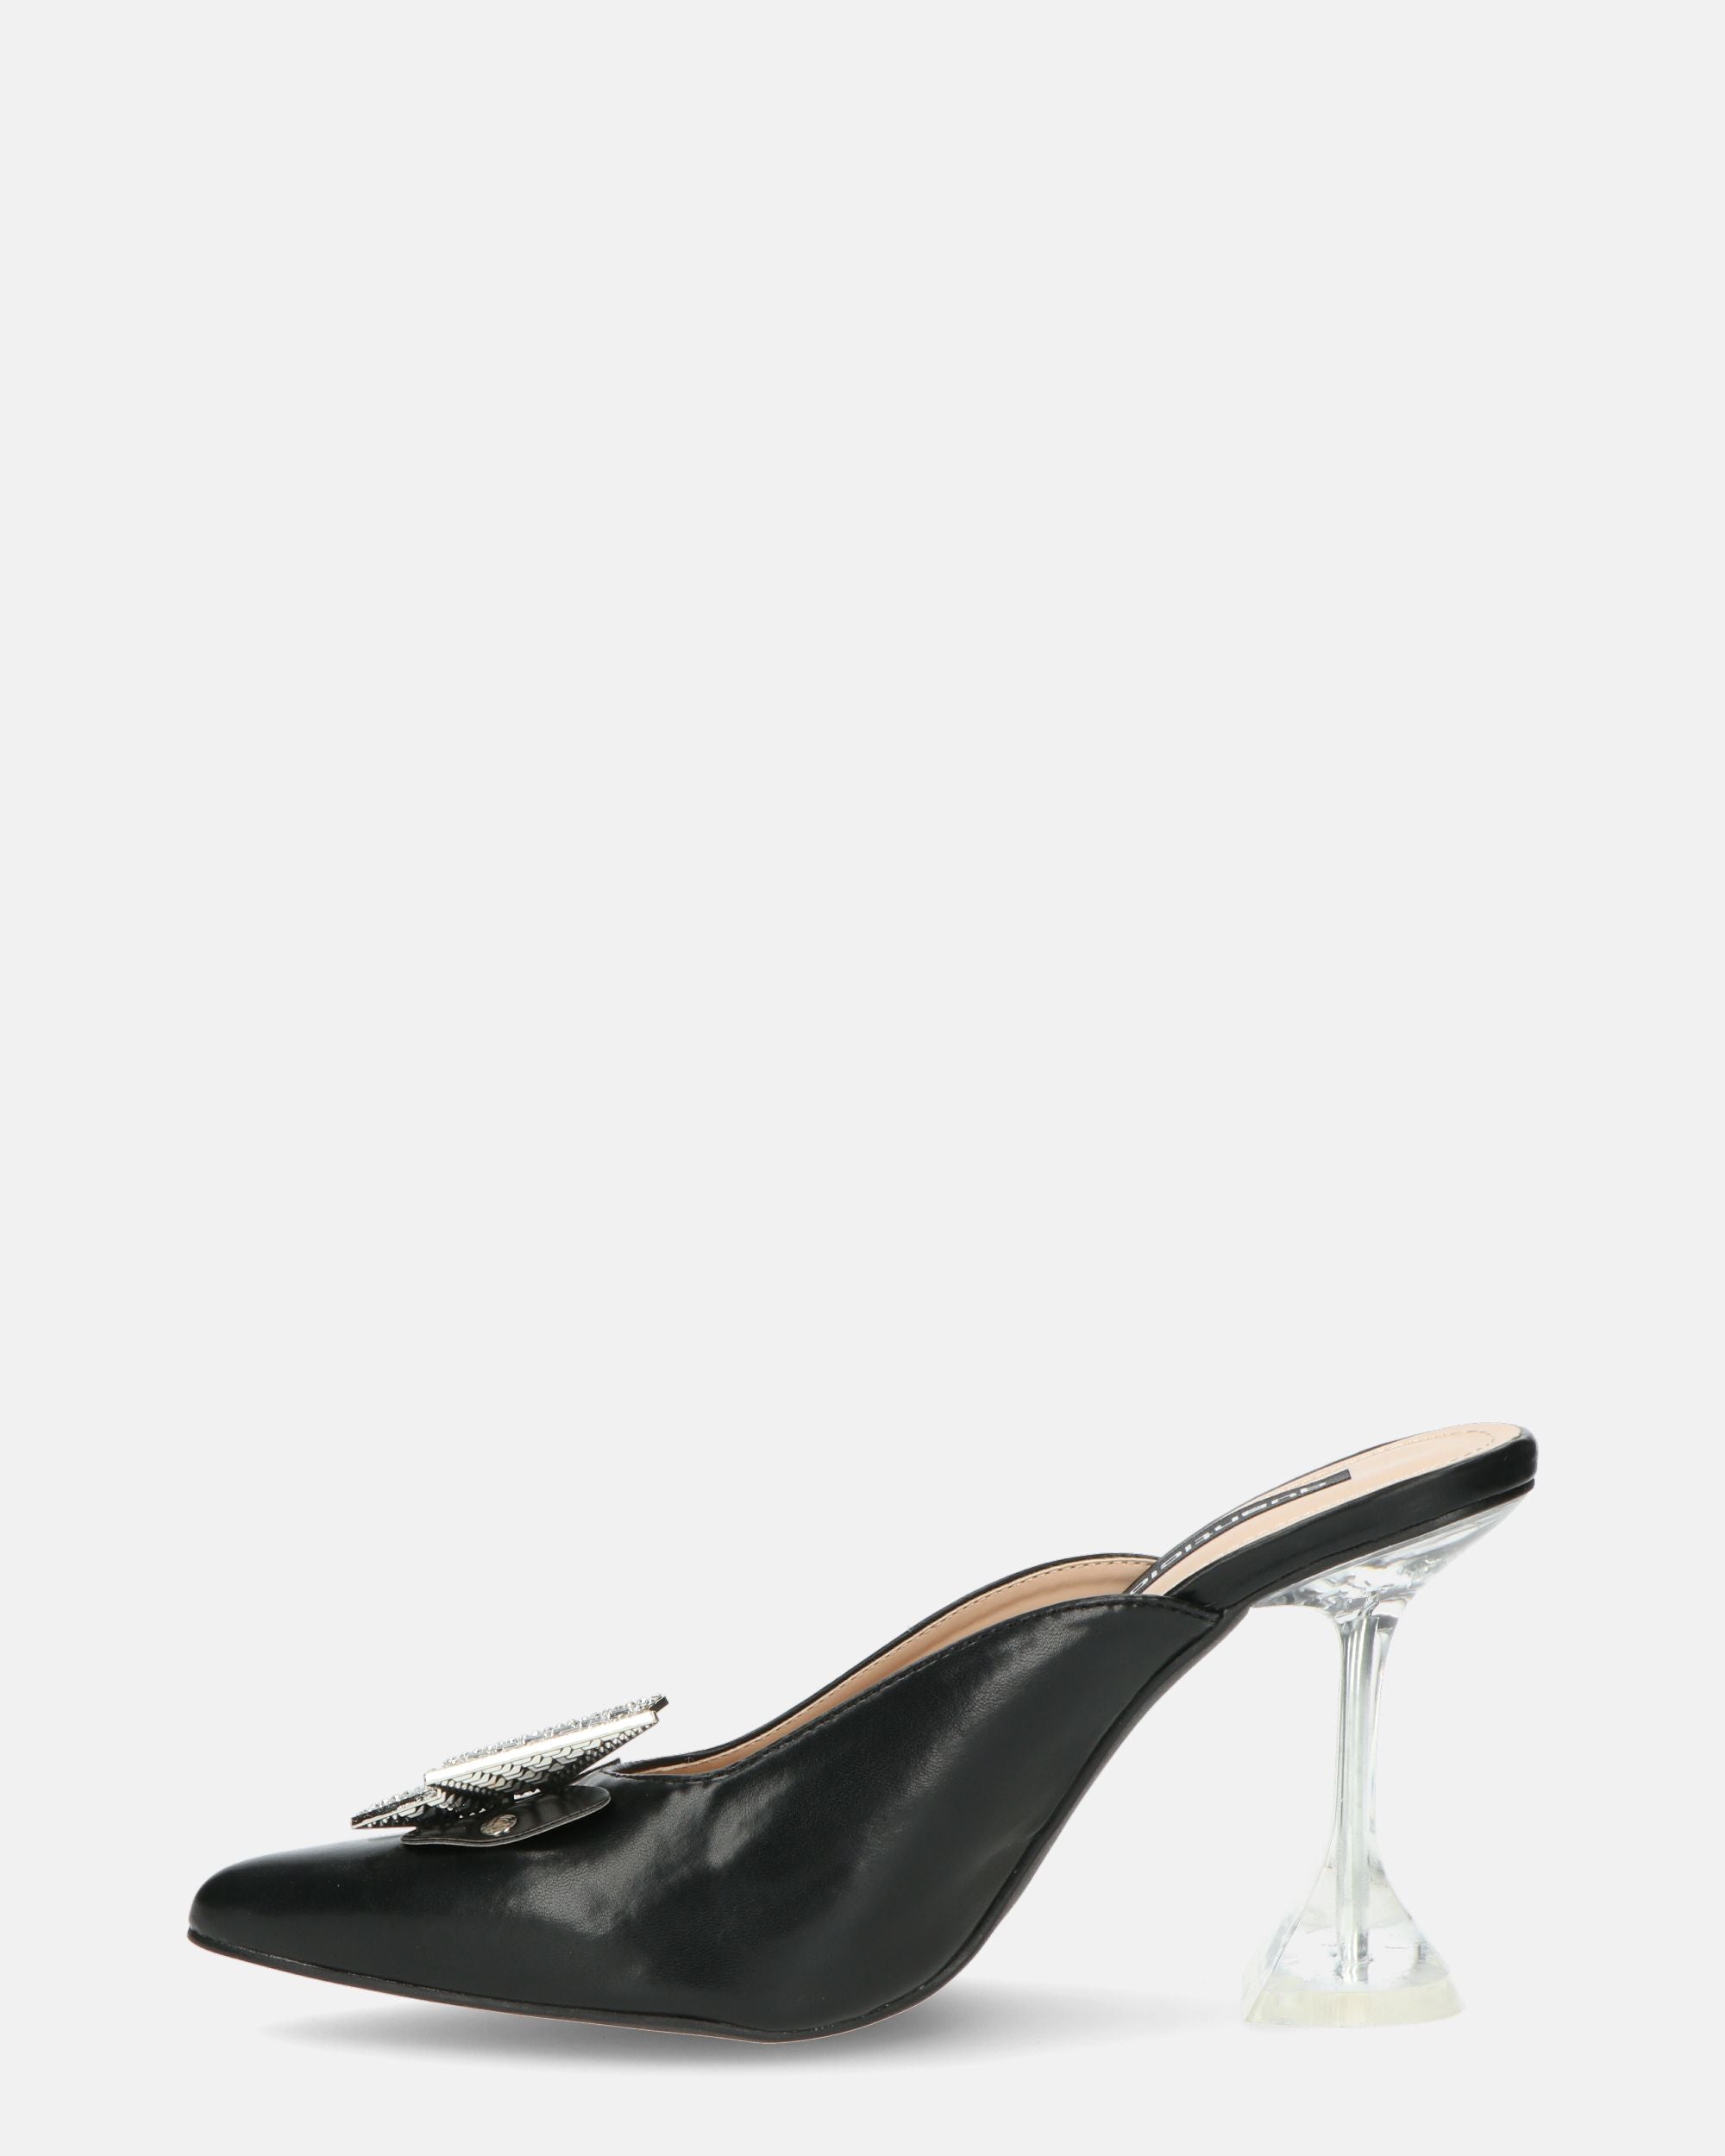 DOJA - zapatos de tacón en ecopiel negra con mariposa de pedrería en la puntera